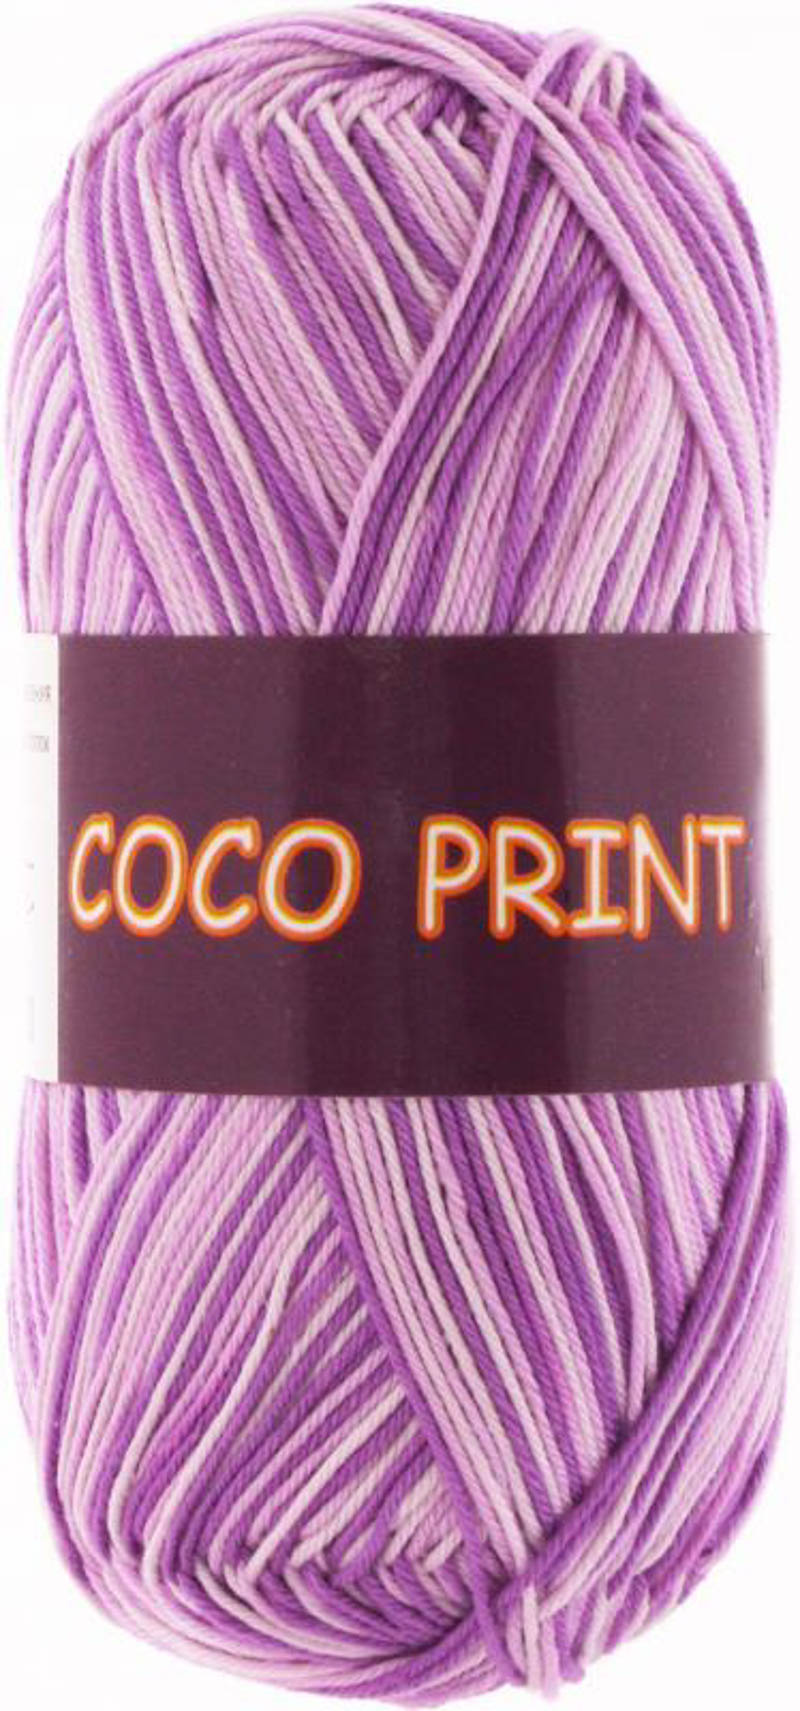 Коко принт (COCO PRINT), пряжа для ручного вязания